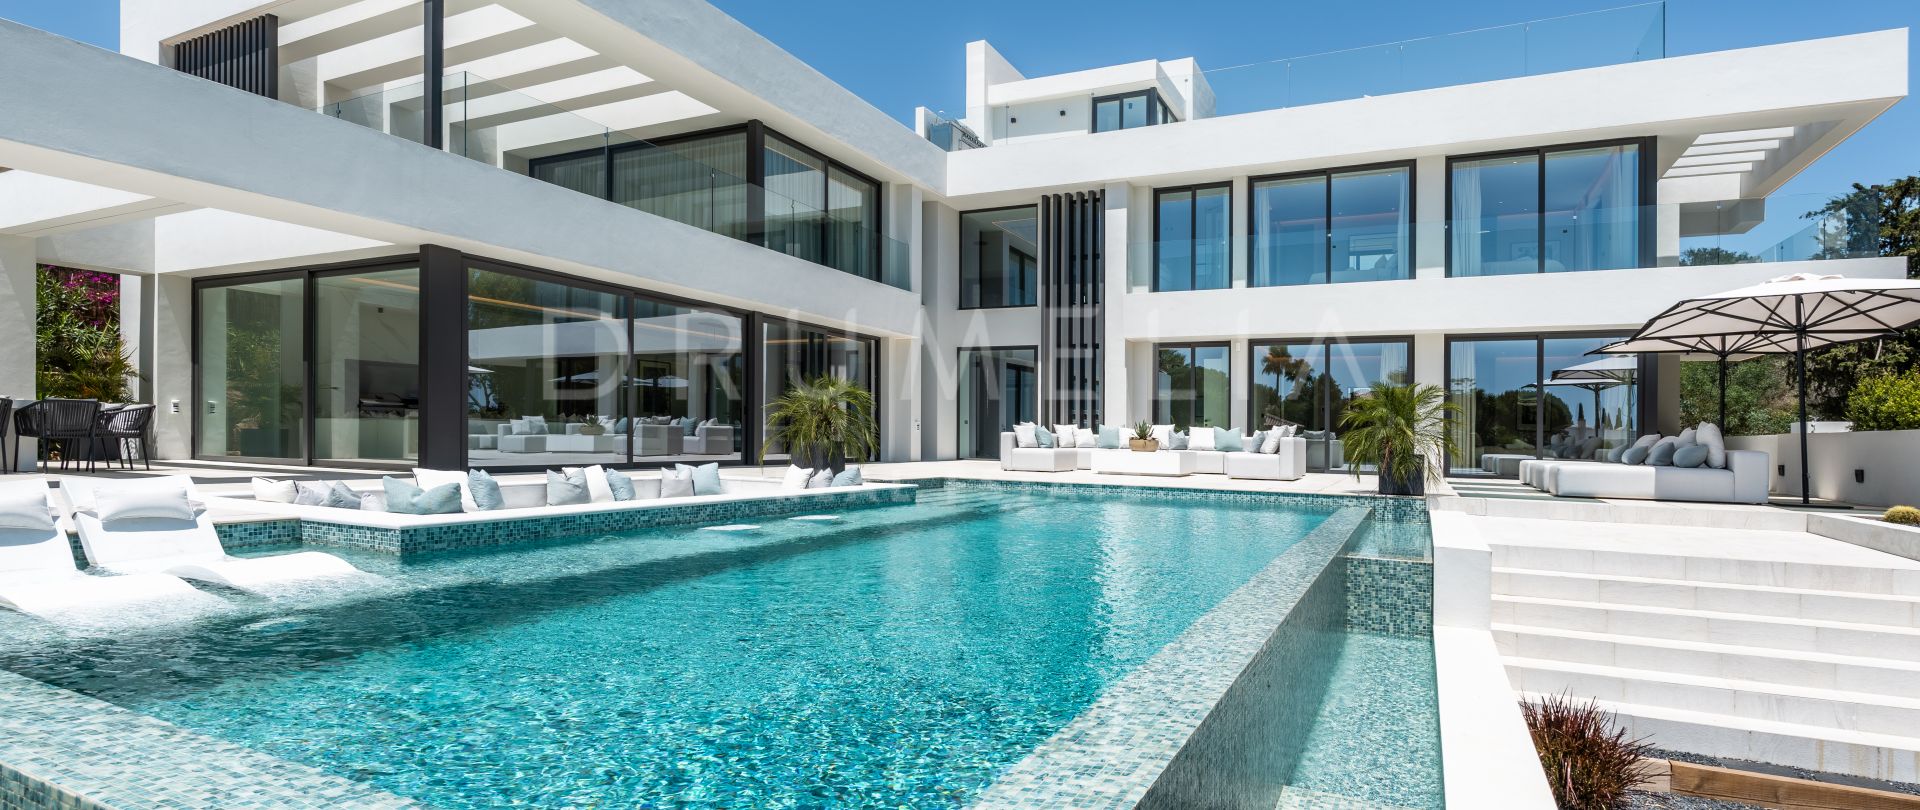 Imposant gloednieuw modern luxe herenhuis in het prachtige Paraiso Alto, Benahavis